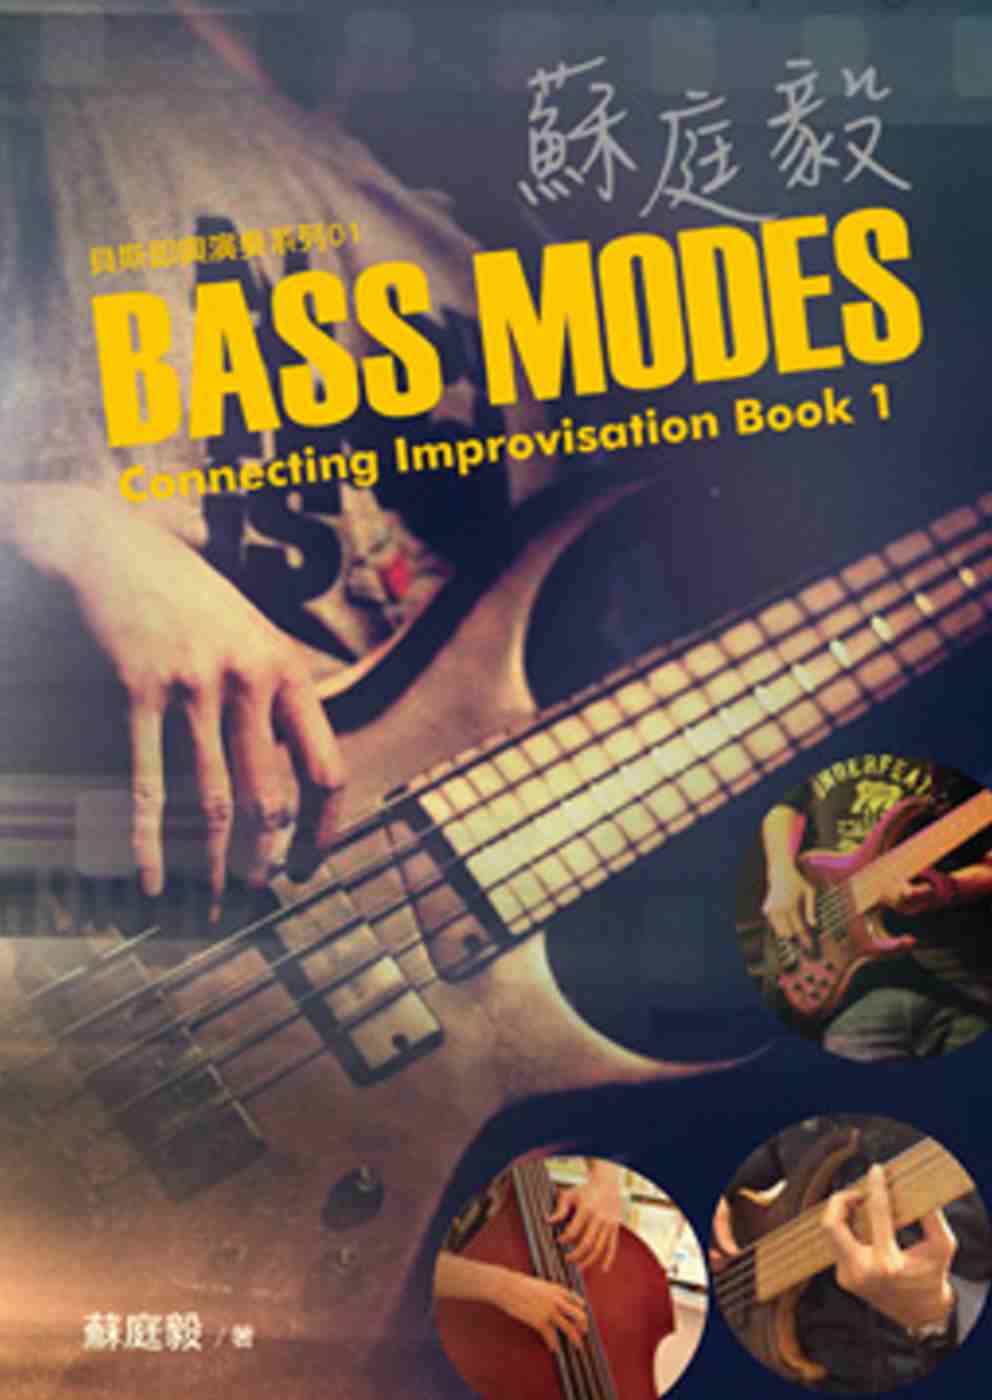 蘇庭毅Bass Modes Connecting Impro...